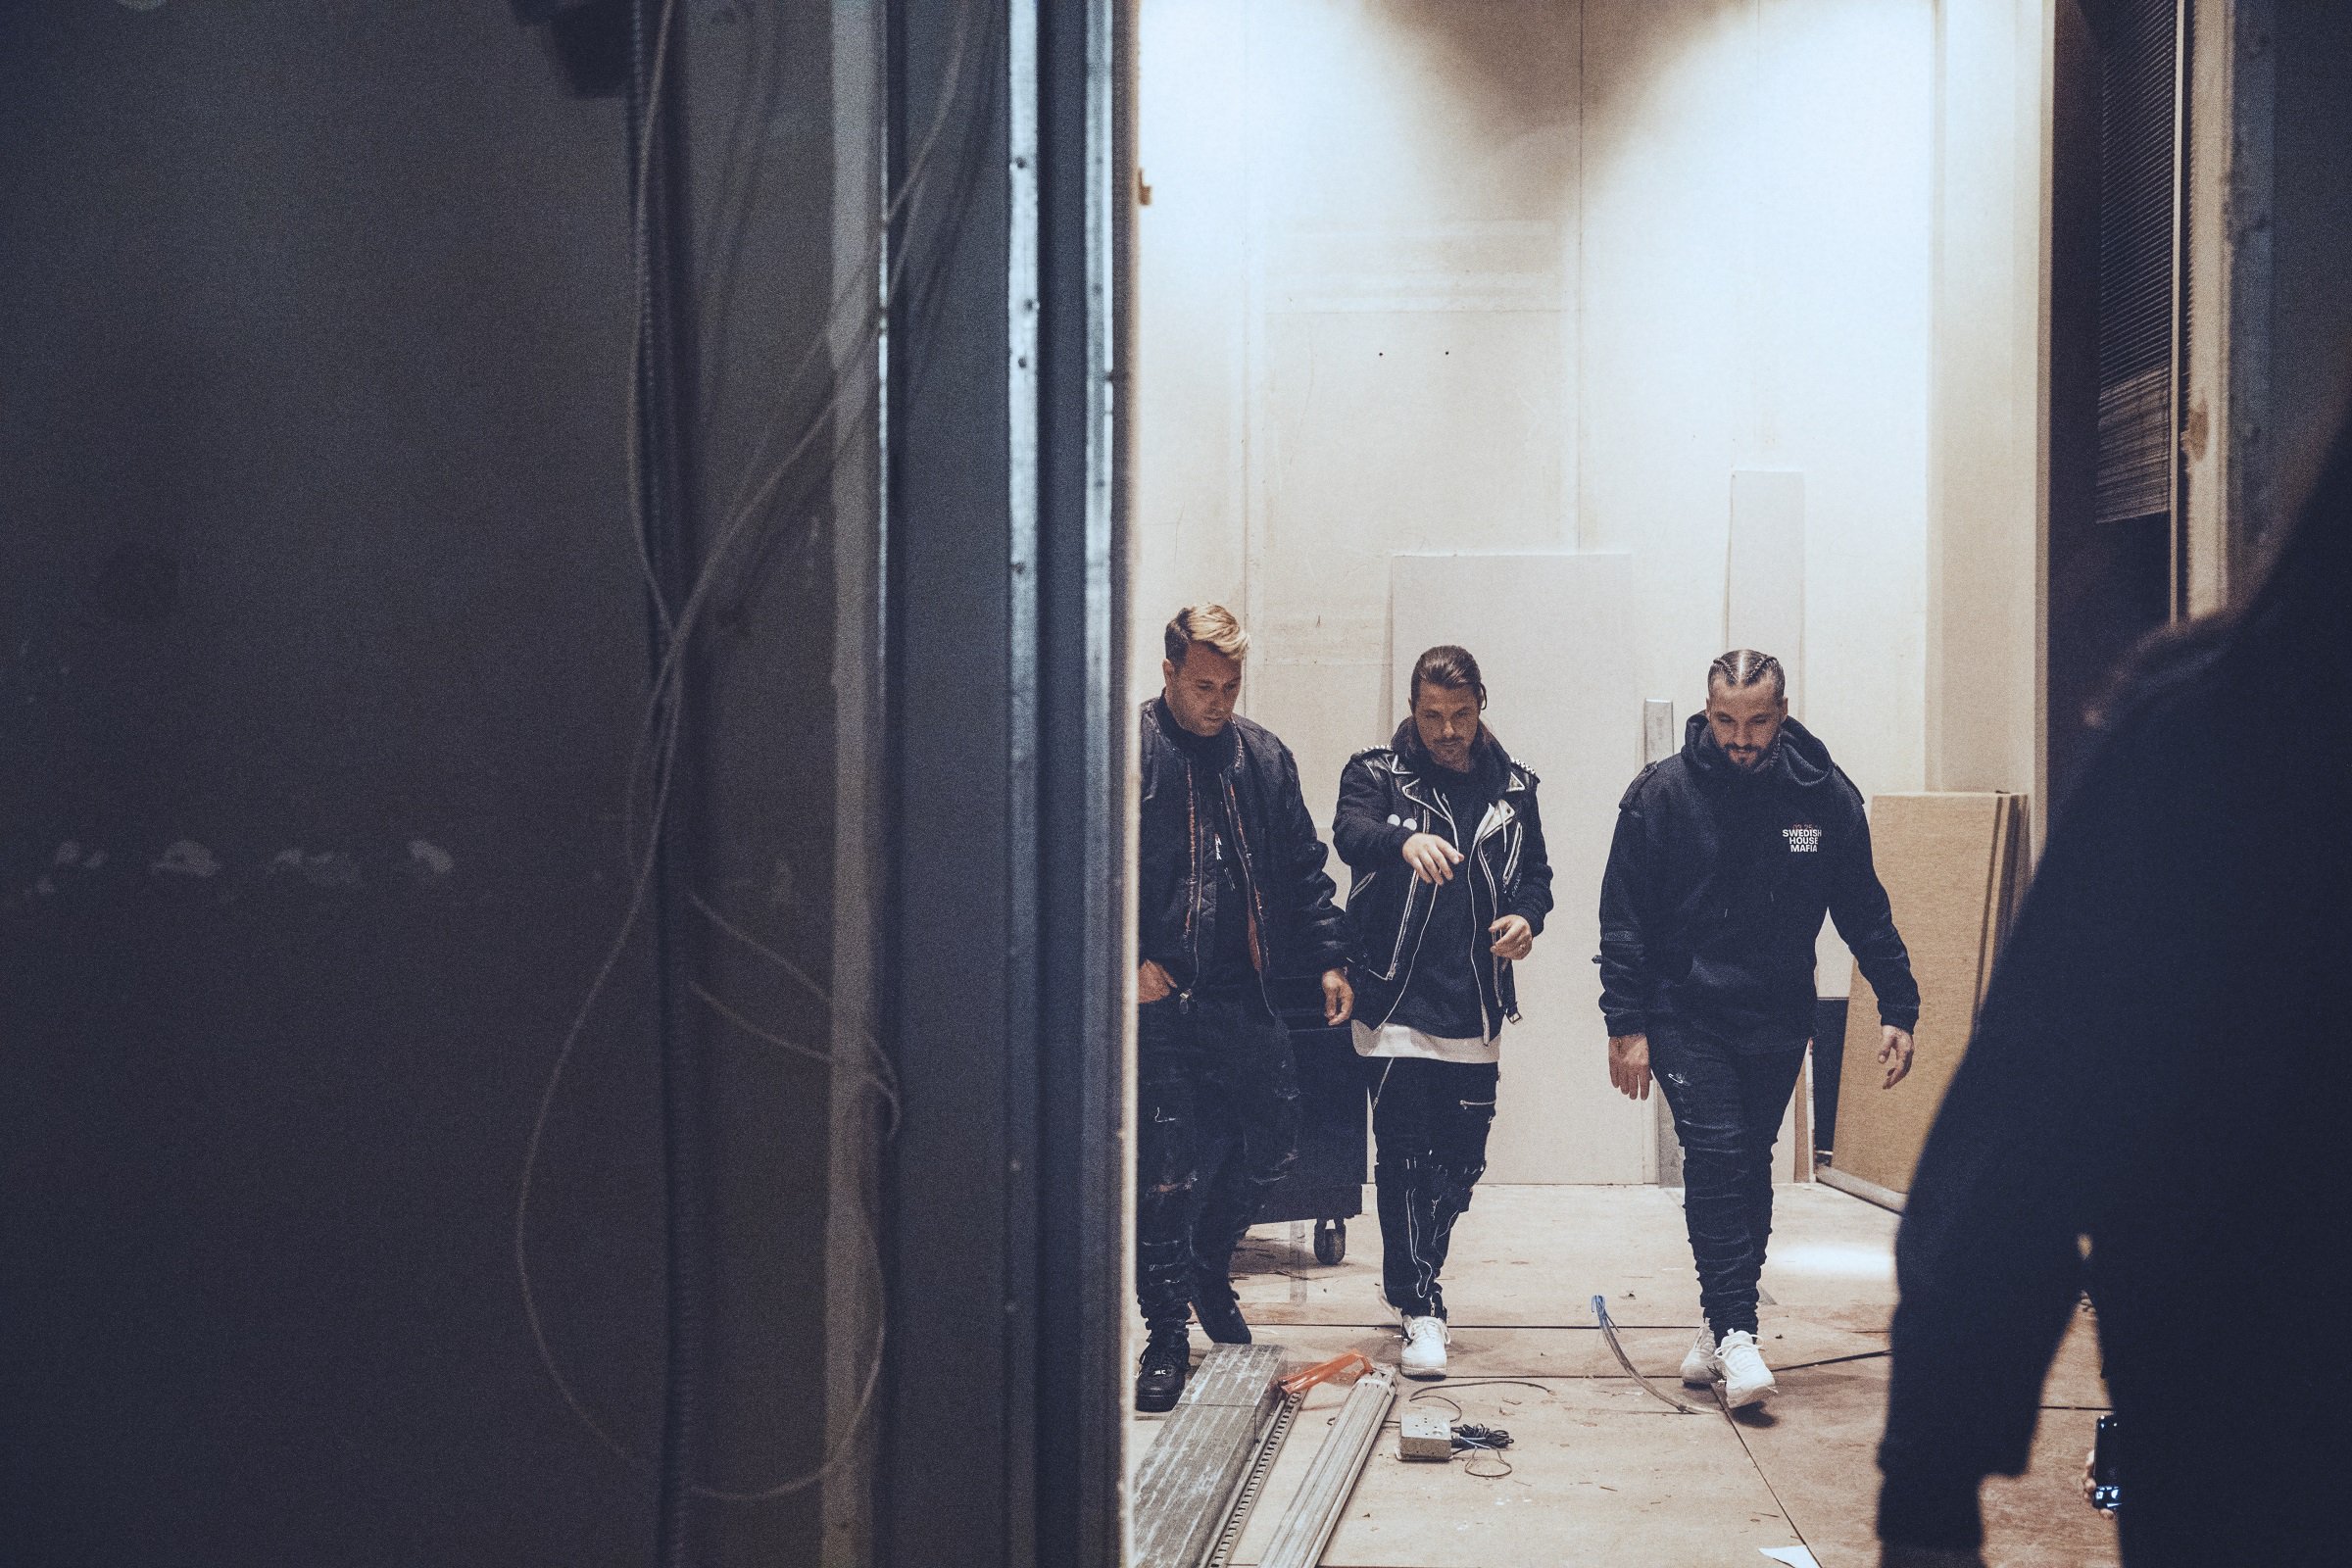 Шведский диджейский коллектив Swedish House Mafia теперь официально подтвердили свое объединение. Трио, состоящее из Axwell, Себастьяна Ингроссо и Стива Анжелло, отыграло сет на фестивале Ultra Music, который прошел в Майями в минувшие выходные.